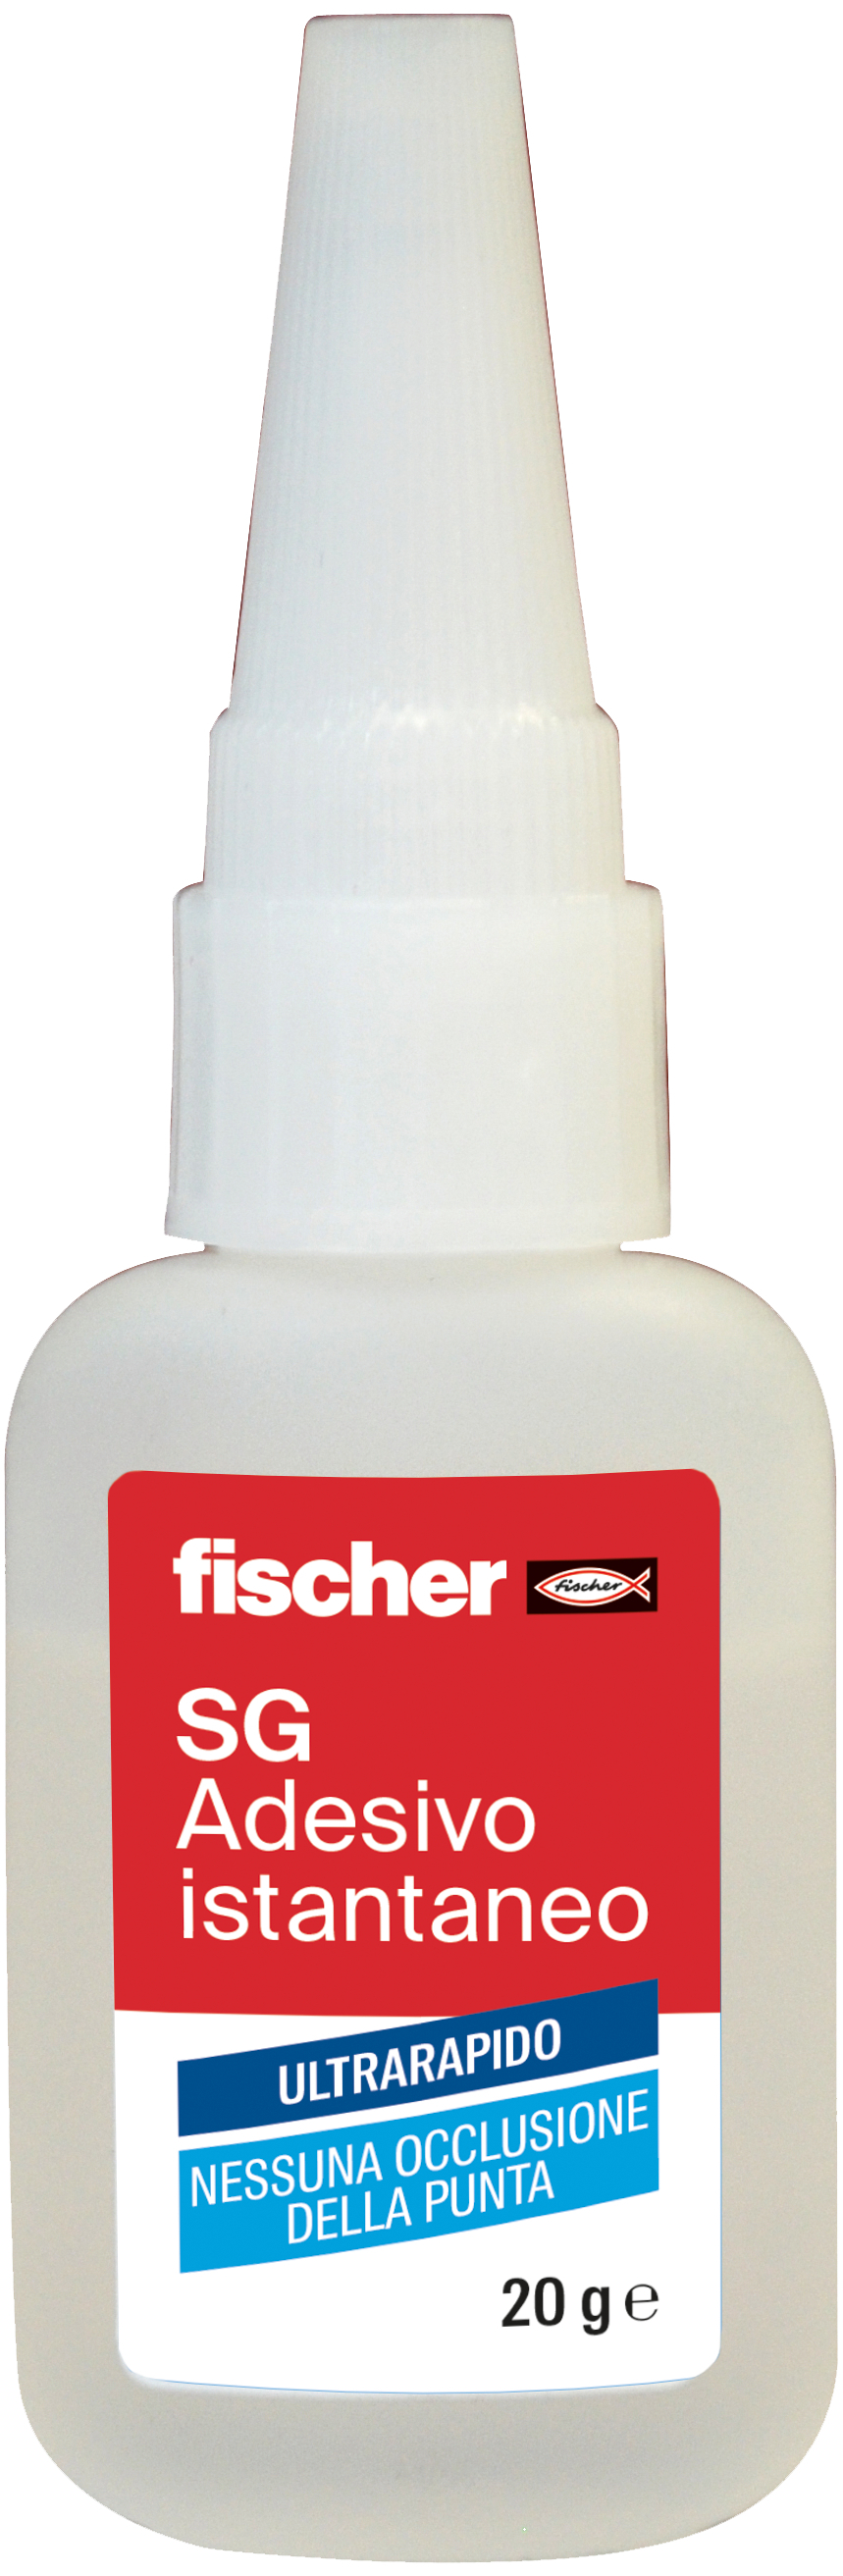 fischer Adesivo istantaneo SG20 colla attacca tutto (1 Pz.) L'adesivo istantaneo liquido e trasparente, a base di etile-cianoacrilato.